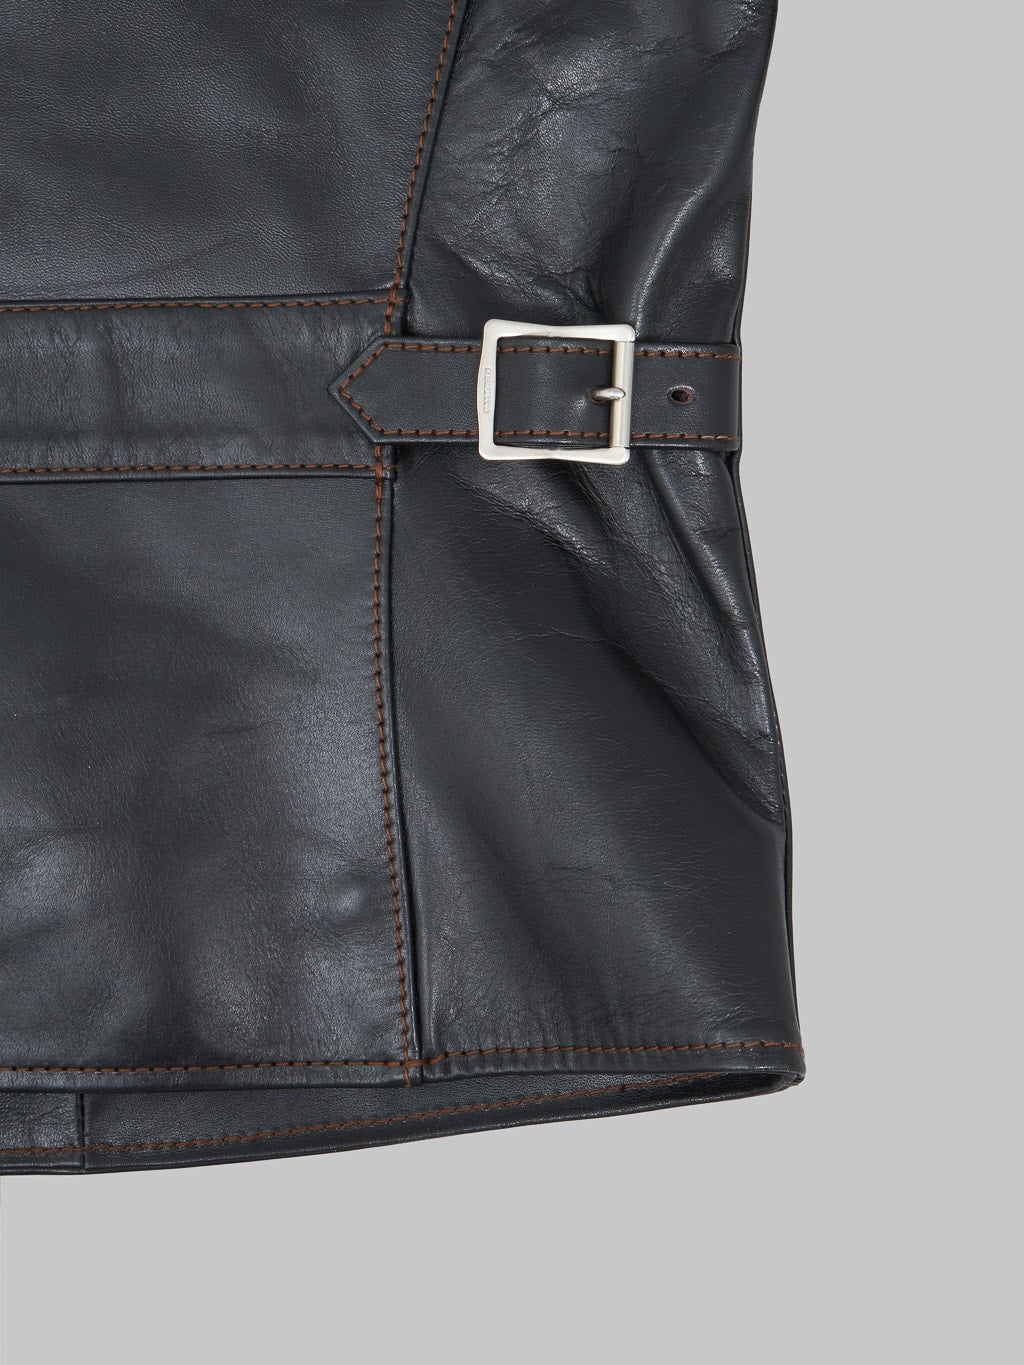 The Flat Head Horsehide leather Single Riders Jacket Black Semi Aniline  adjuster